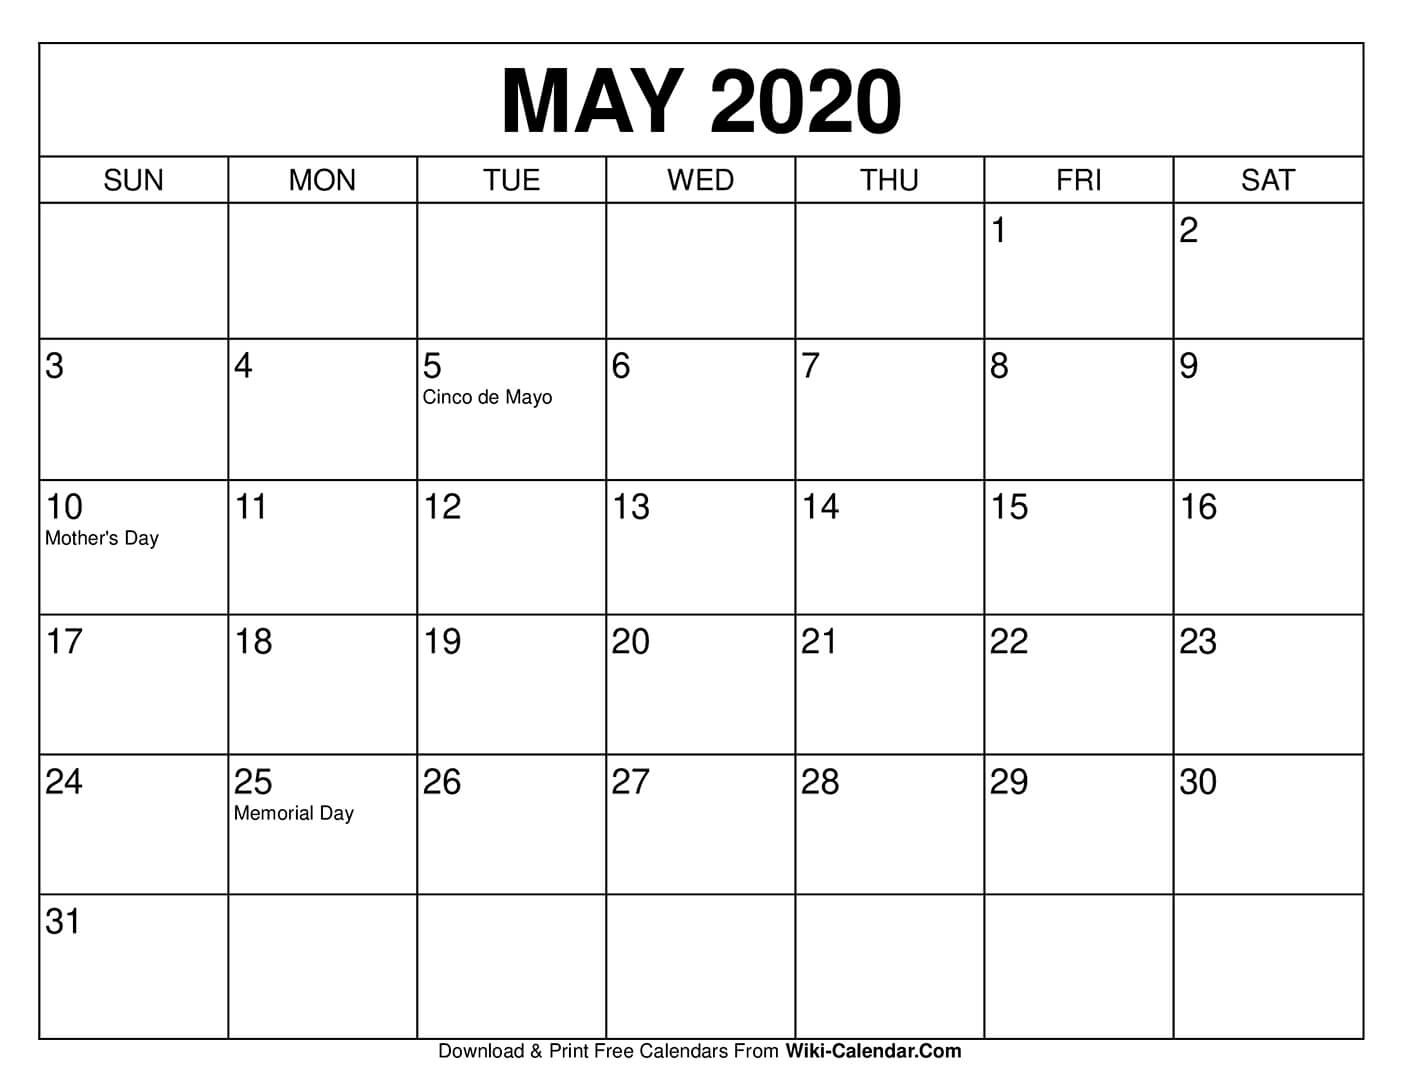 Free Printable May 2020 Calendars  May 2020 Calendar